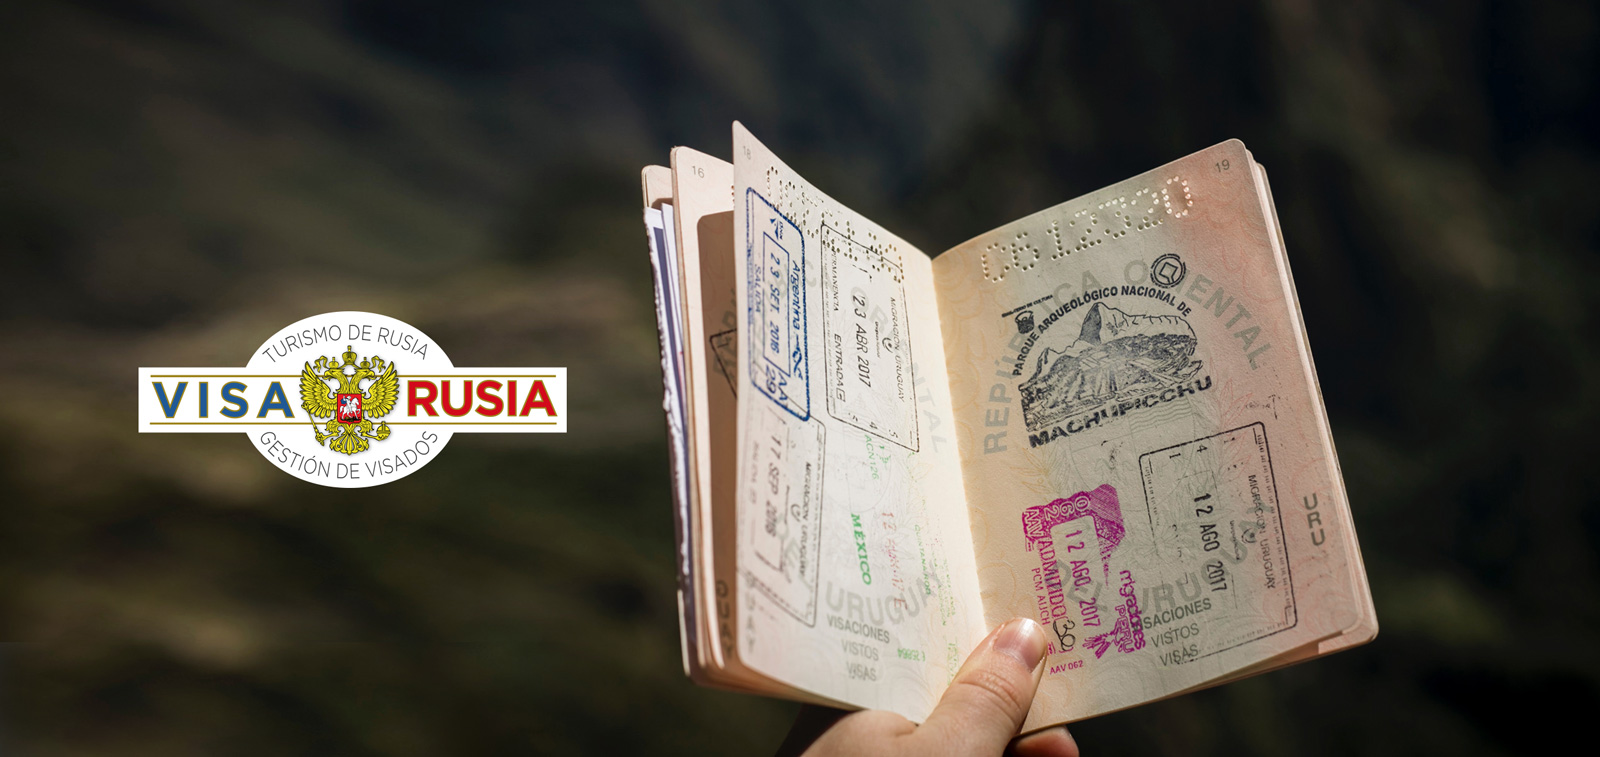 Diseño de logo para agencia de viajes, turismo y visados a Rusia